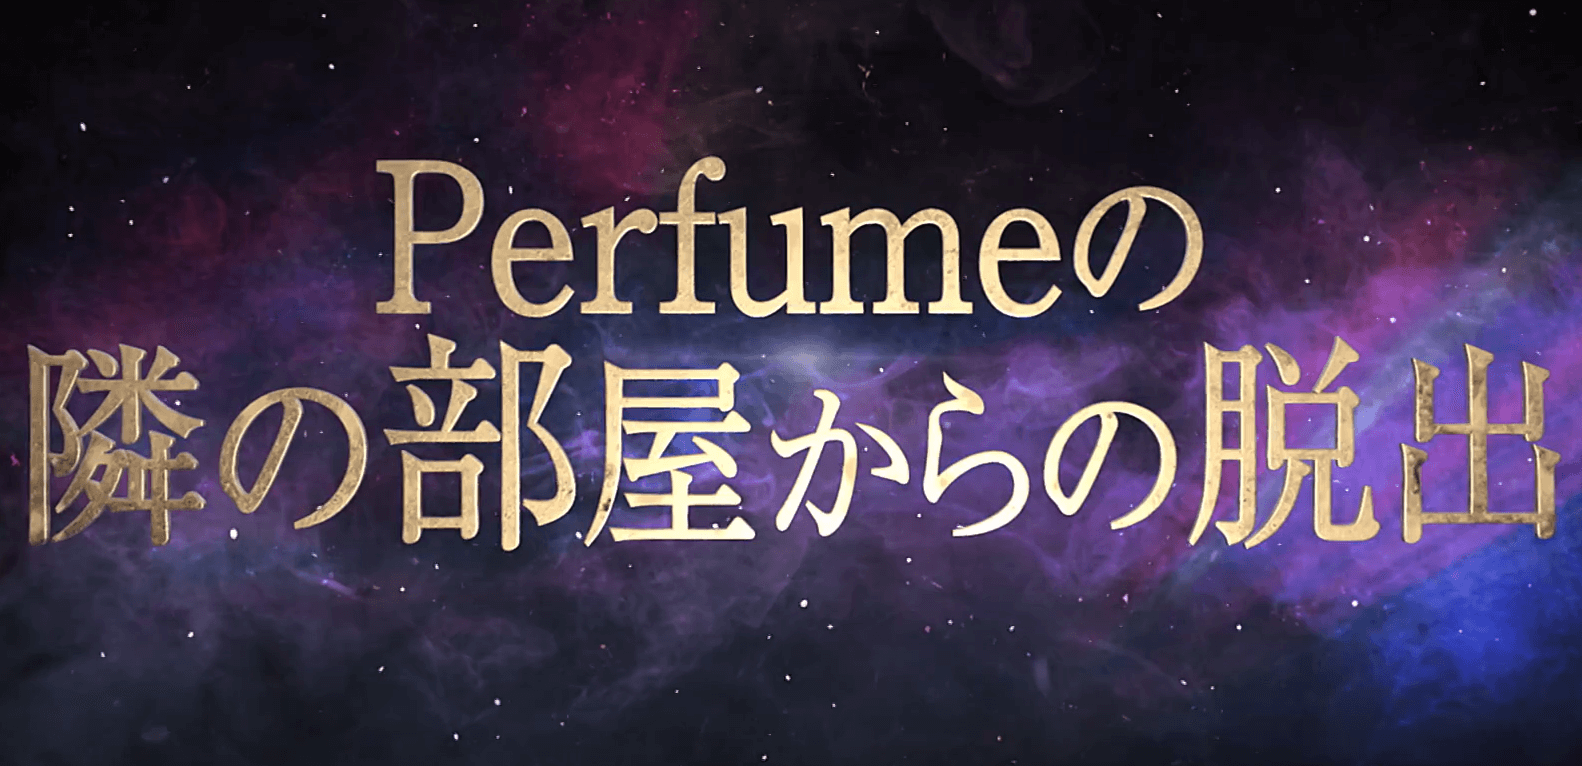 Scrap Blog Archive Perfumeとリアル脱出ゲームのコラボイベント Perfume の隣の部屋からの脱出 が2020年夏に開催決定